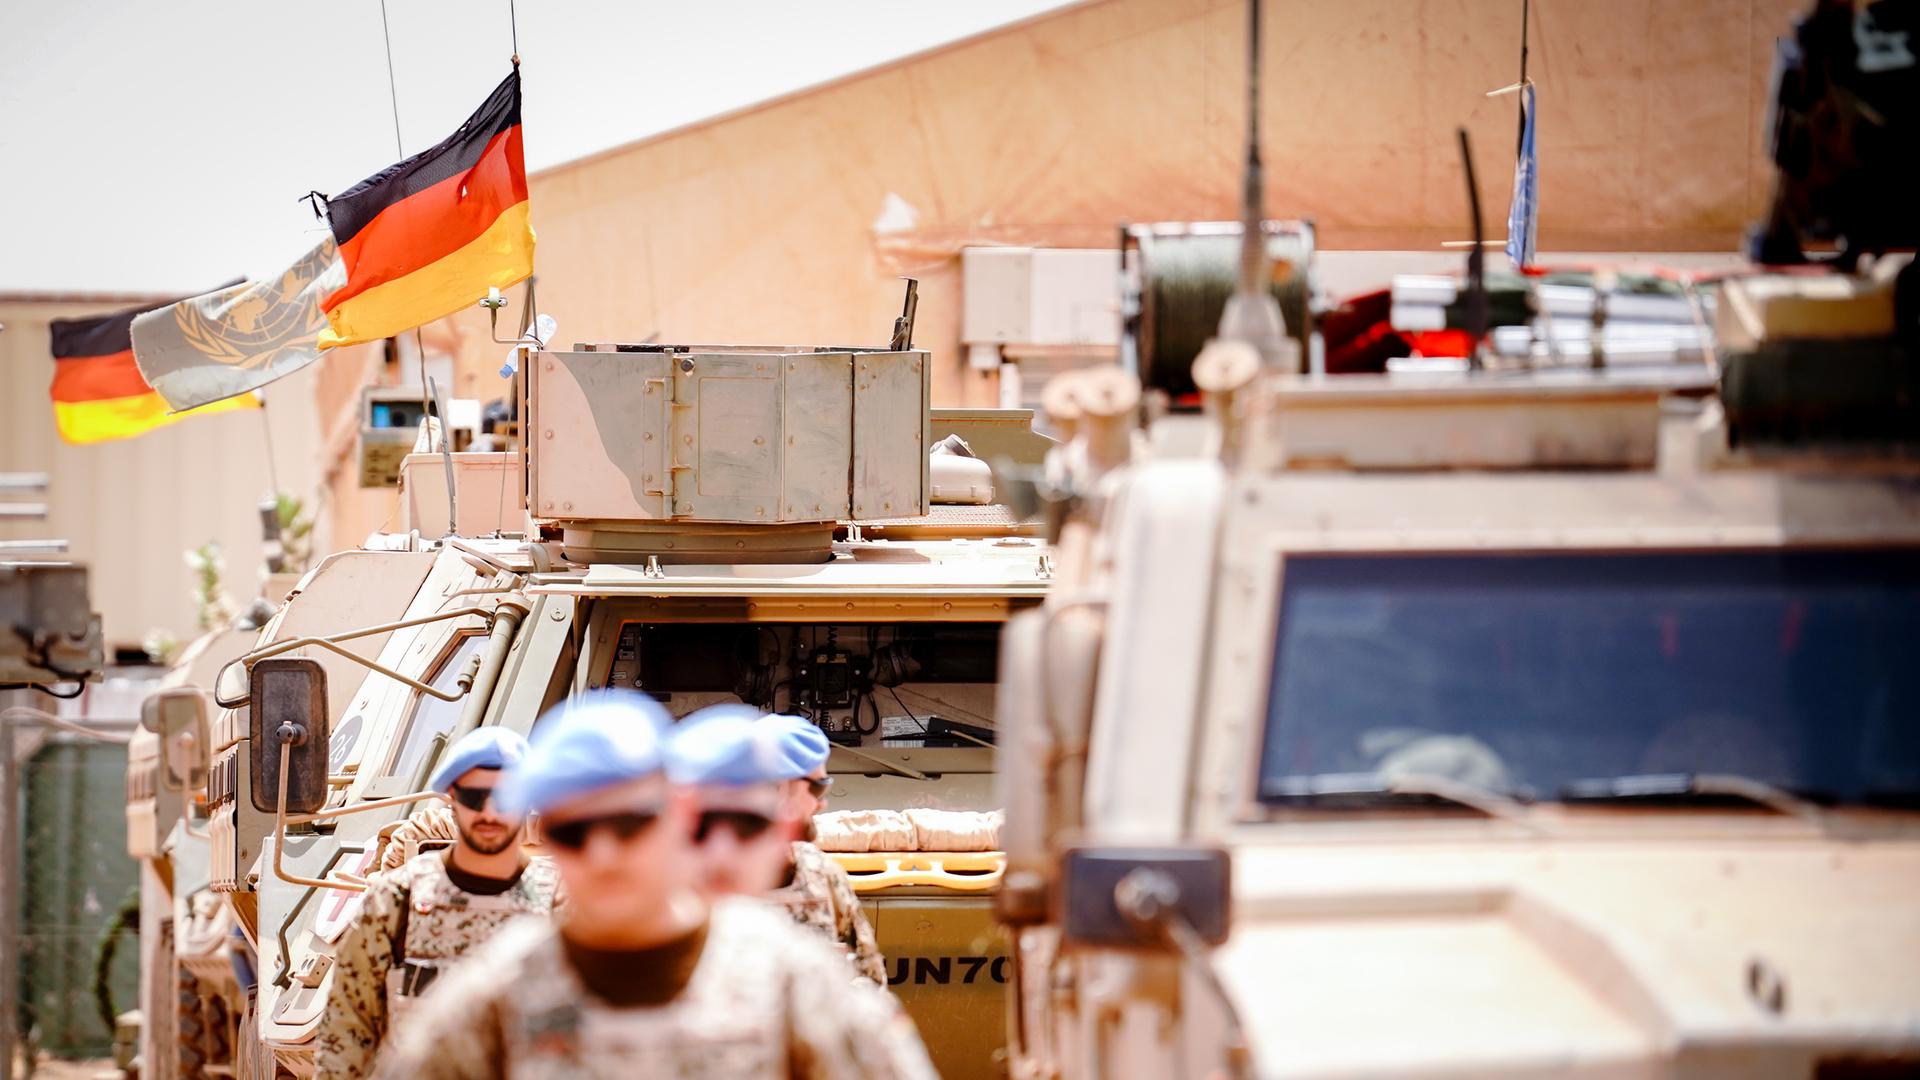 Die Deutschlandfahne und die Flagge der Vereinten Nationen wehen im Camp Castor in Gao/Mali.